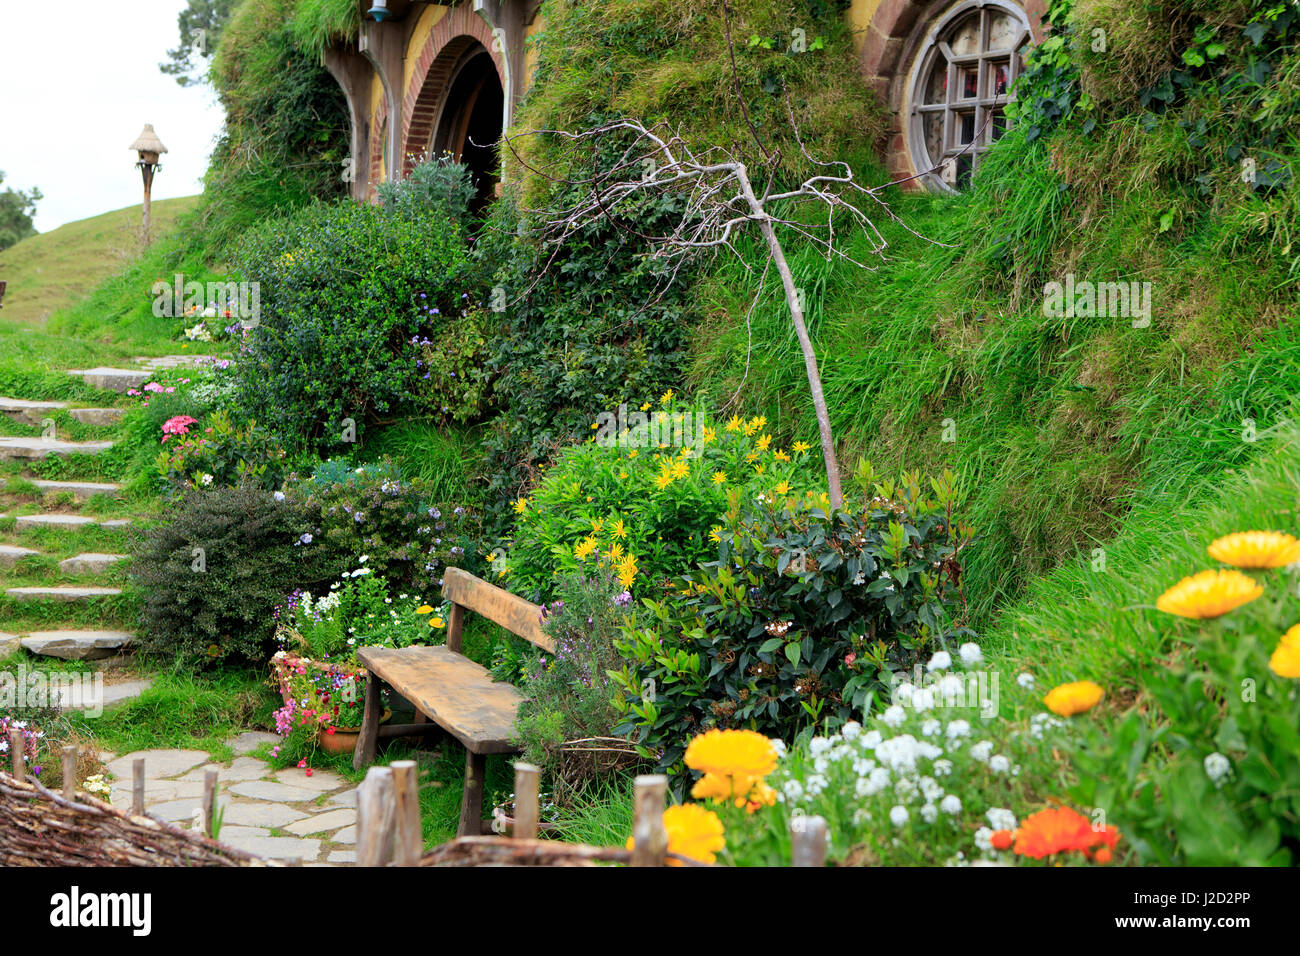 Hobbiton, près de Matamata sur l'île nord de la Nouvelle-Zélande, est le film ensemble utilisé dans la série de film "Le Seigneur des Anneaux' et 'Le Hobbit'. Cette maison est connue sous le nom de Bag End et est la maison de la protagoniste du film-Bilbo Sacquet. Banque D'Images